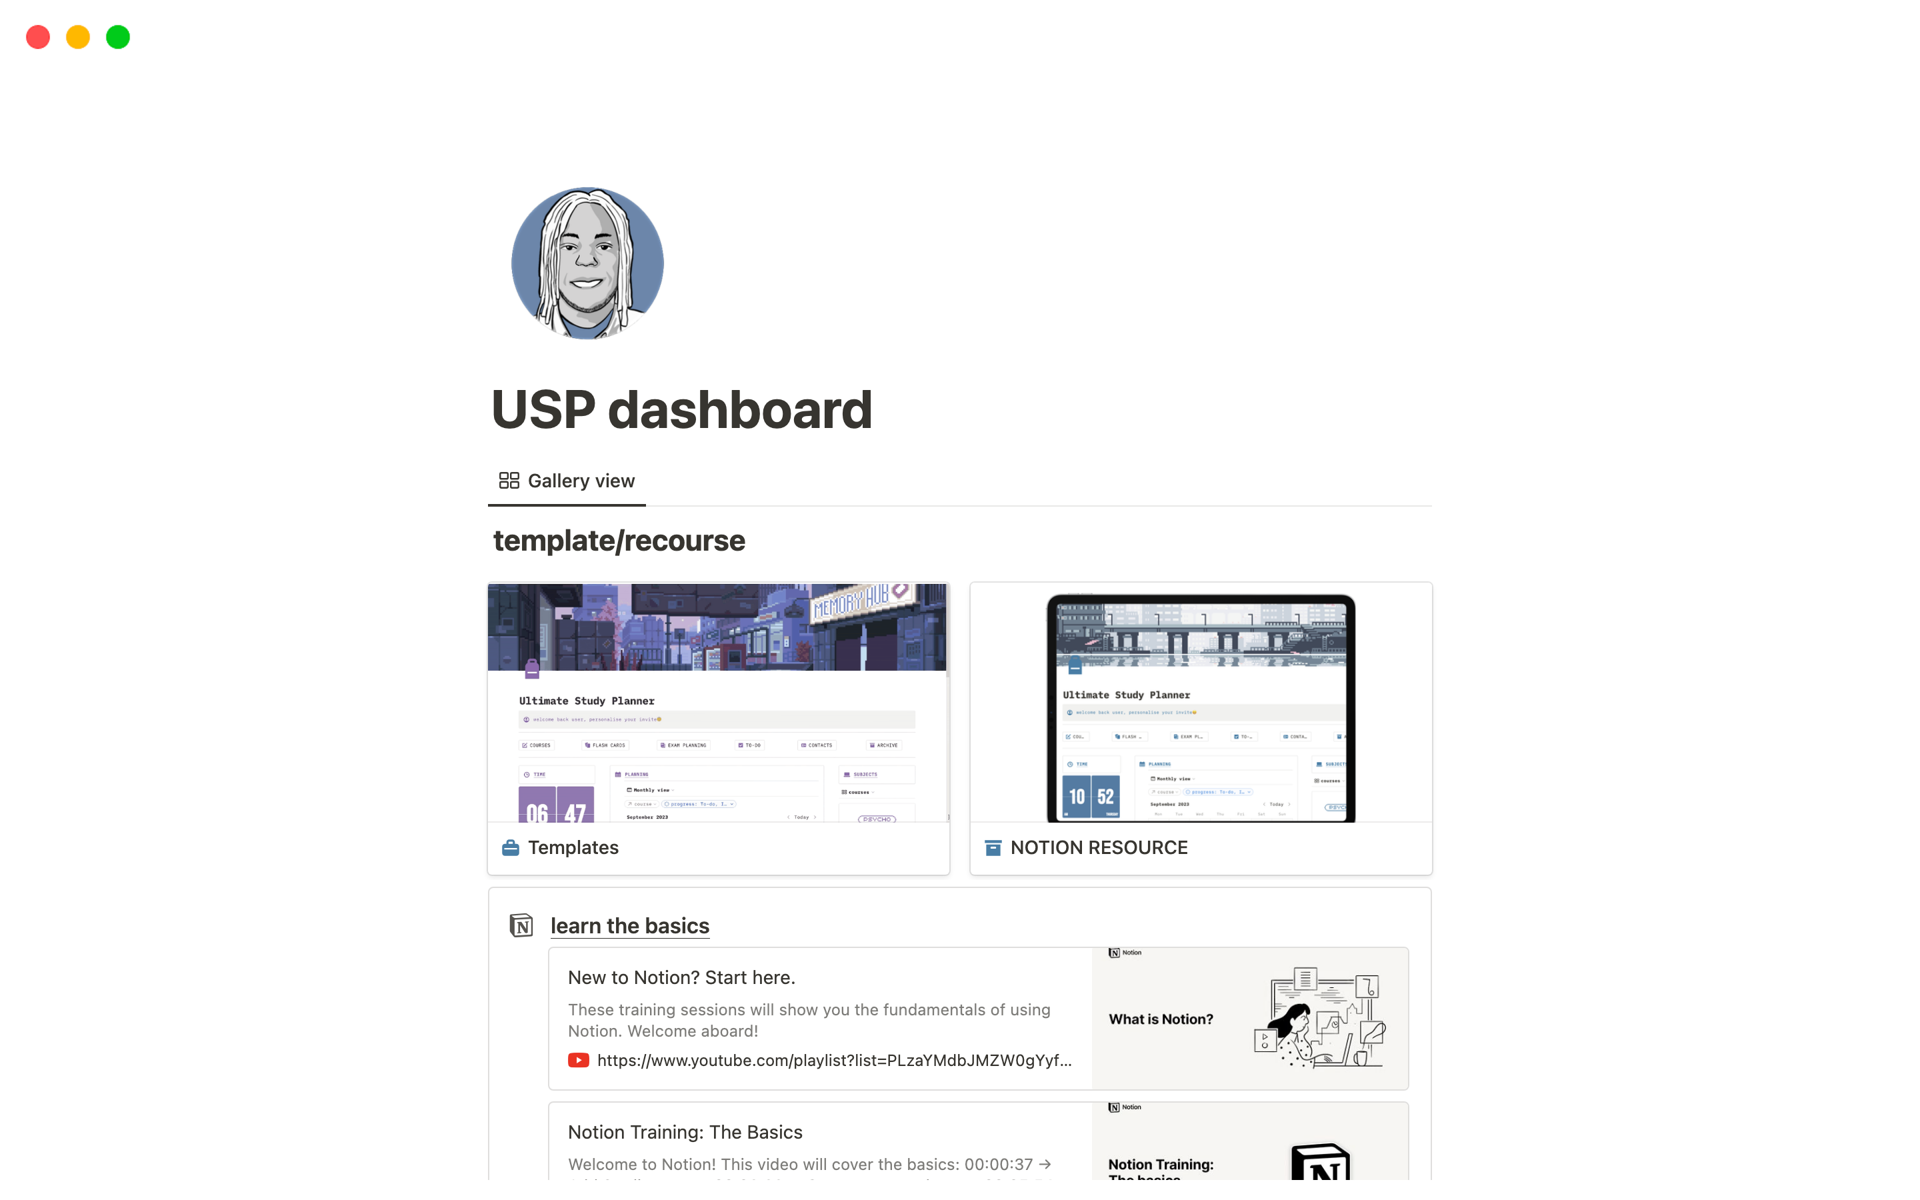 Vista previa de plantilla para Ultimate Study Planner | dashboard